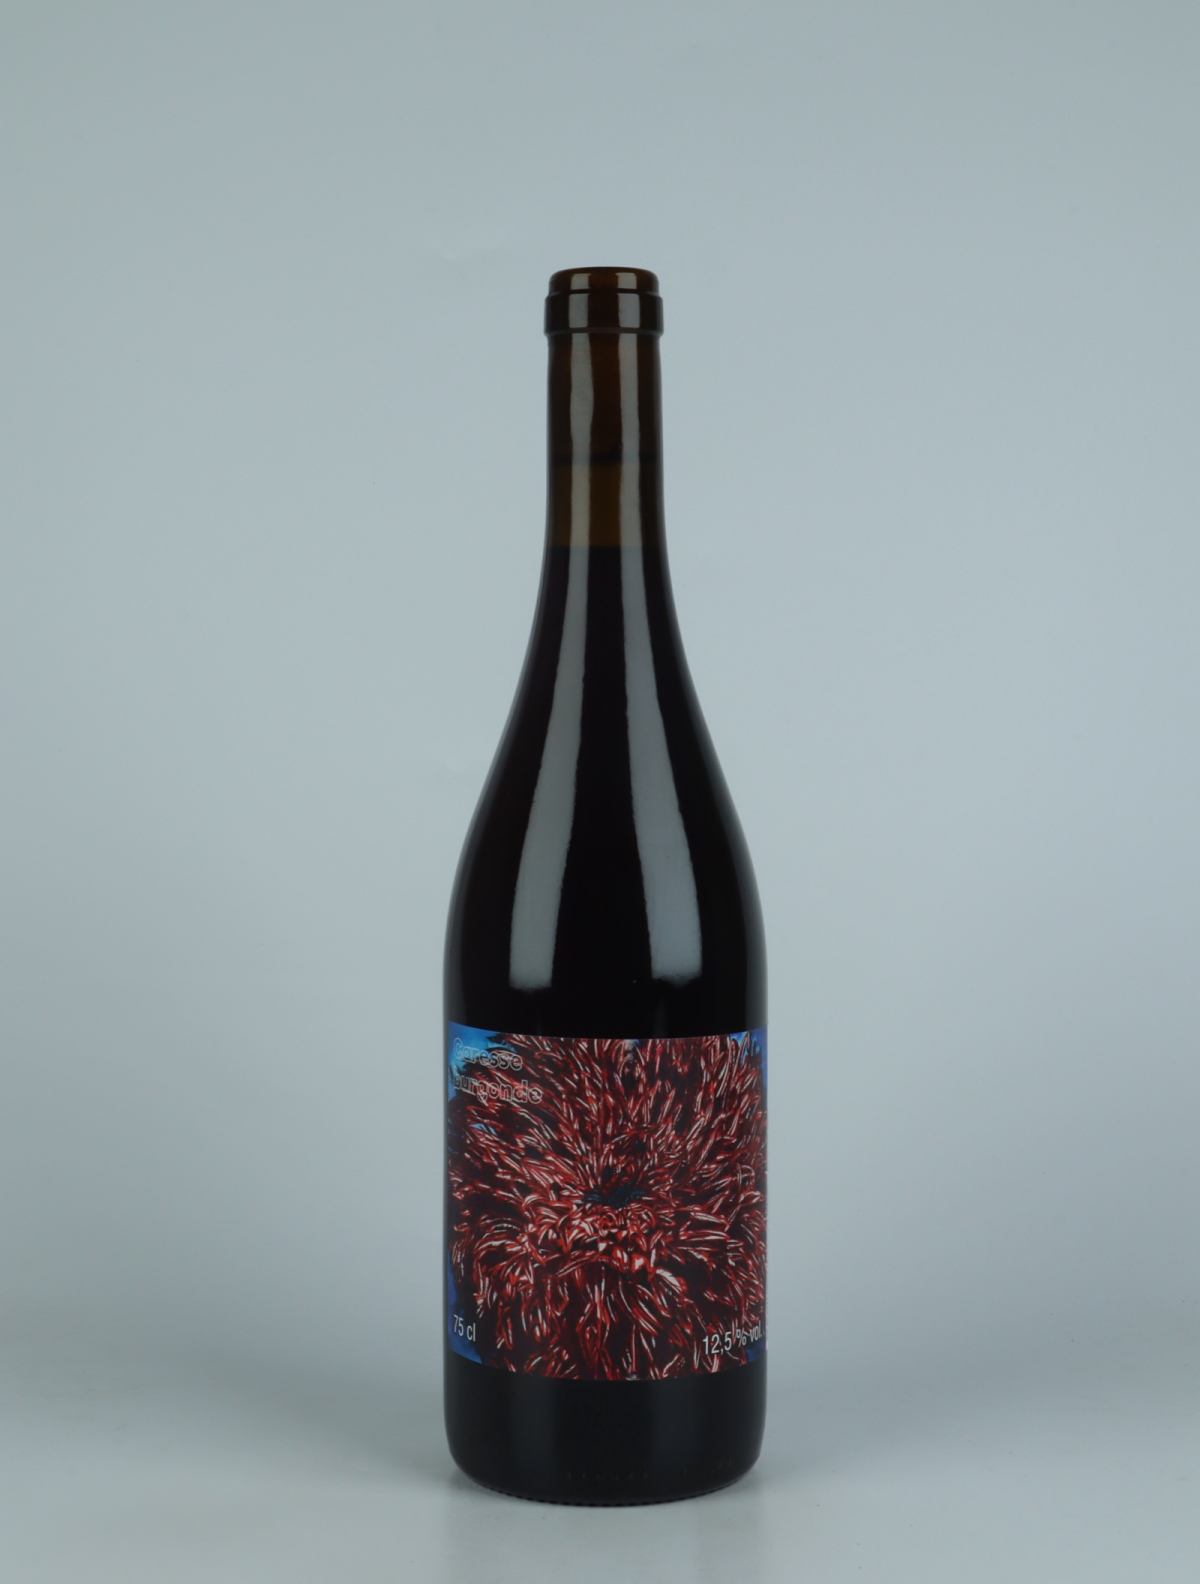 En flaske 2022 Caresse Burgonde - Pinot Noir Rødvin fra Les Vins du Fab, Neuchâtel i Schweiz